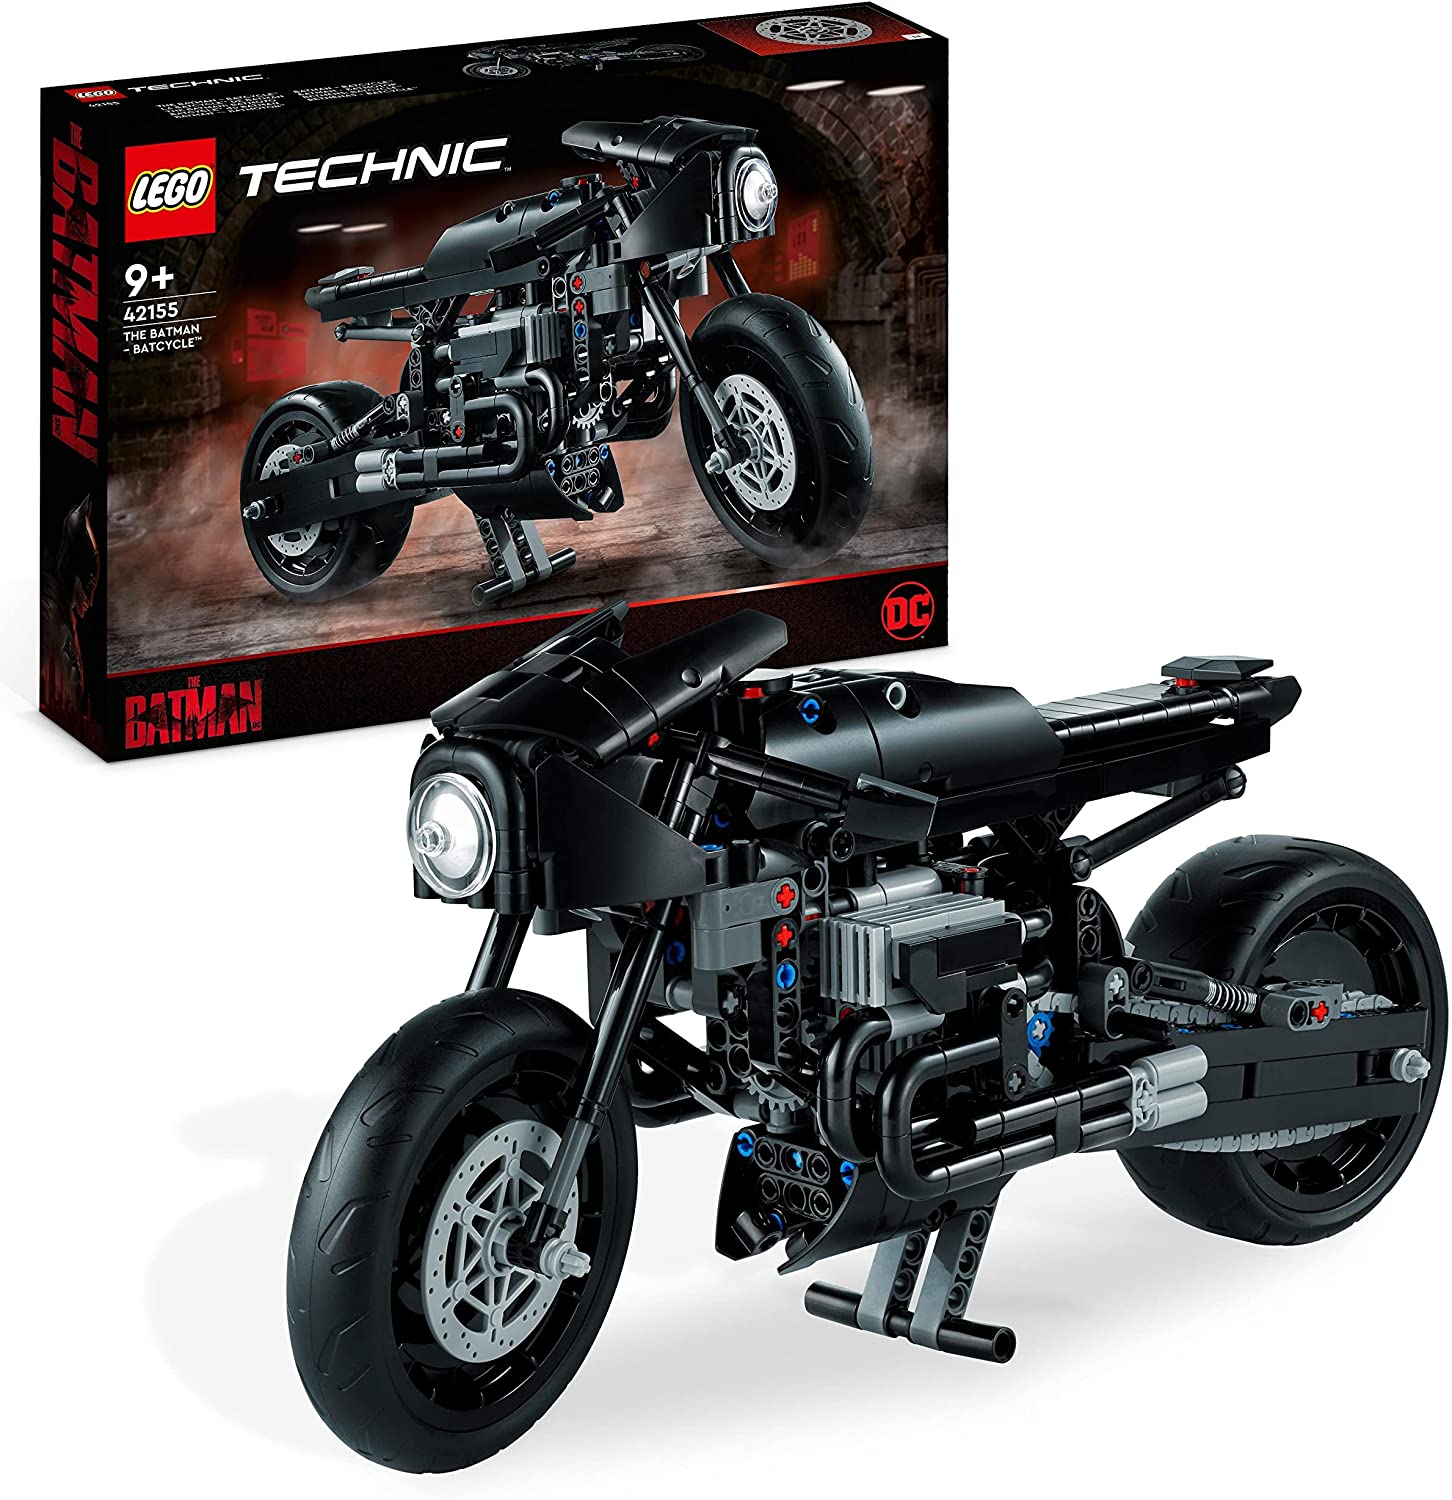 LEGO 42155 Technic the Batman Batcycle Set Motorcycle Toy Scale Model Kit of the Iconic Superhero Bike 2022 Movie